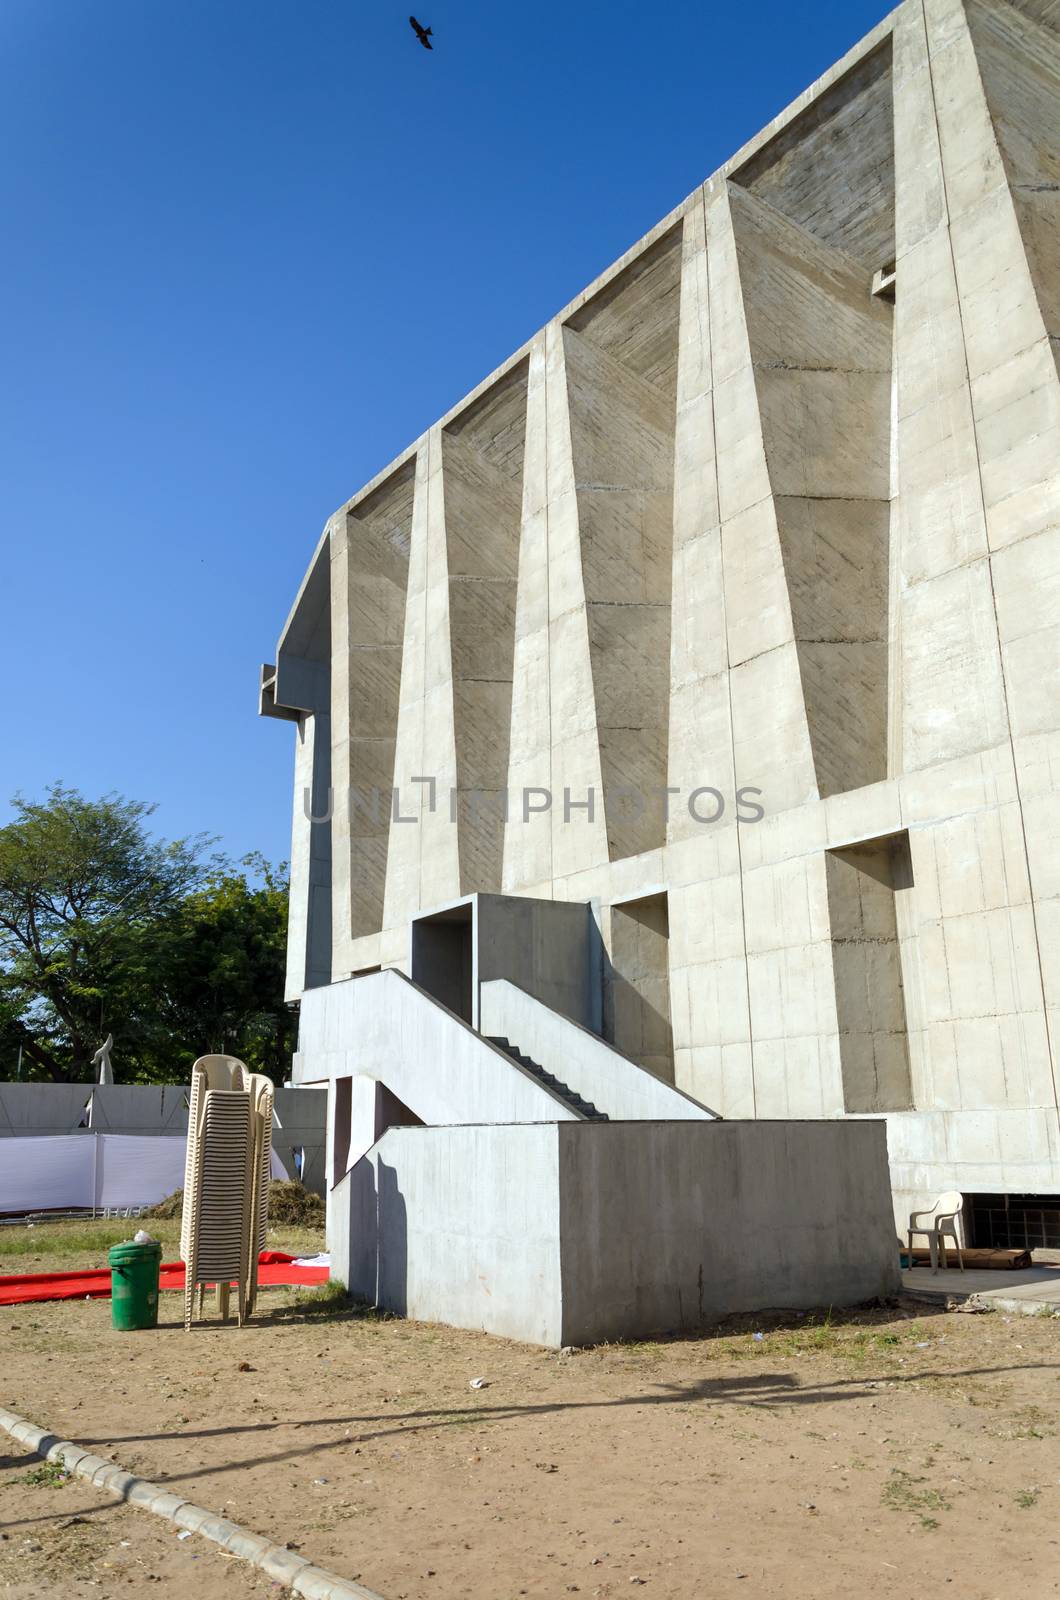 Tagore Memorial Hall in Ahmedabad, Gujarat, India